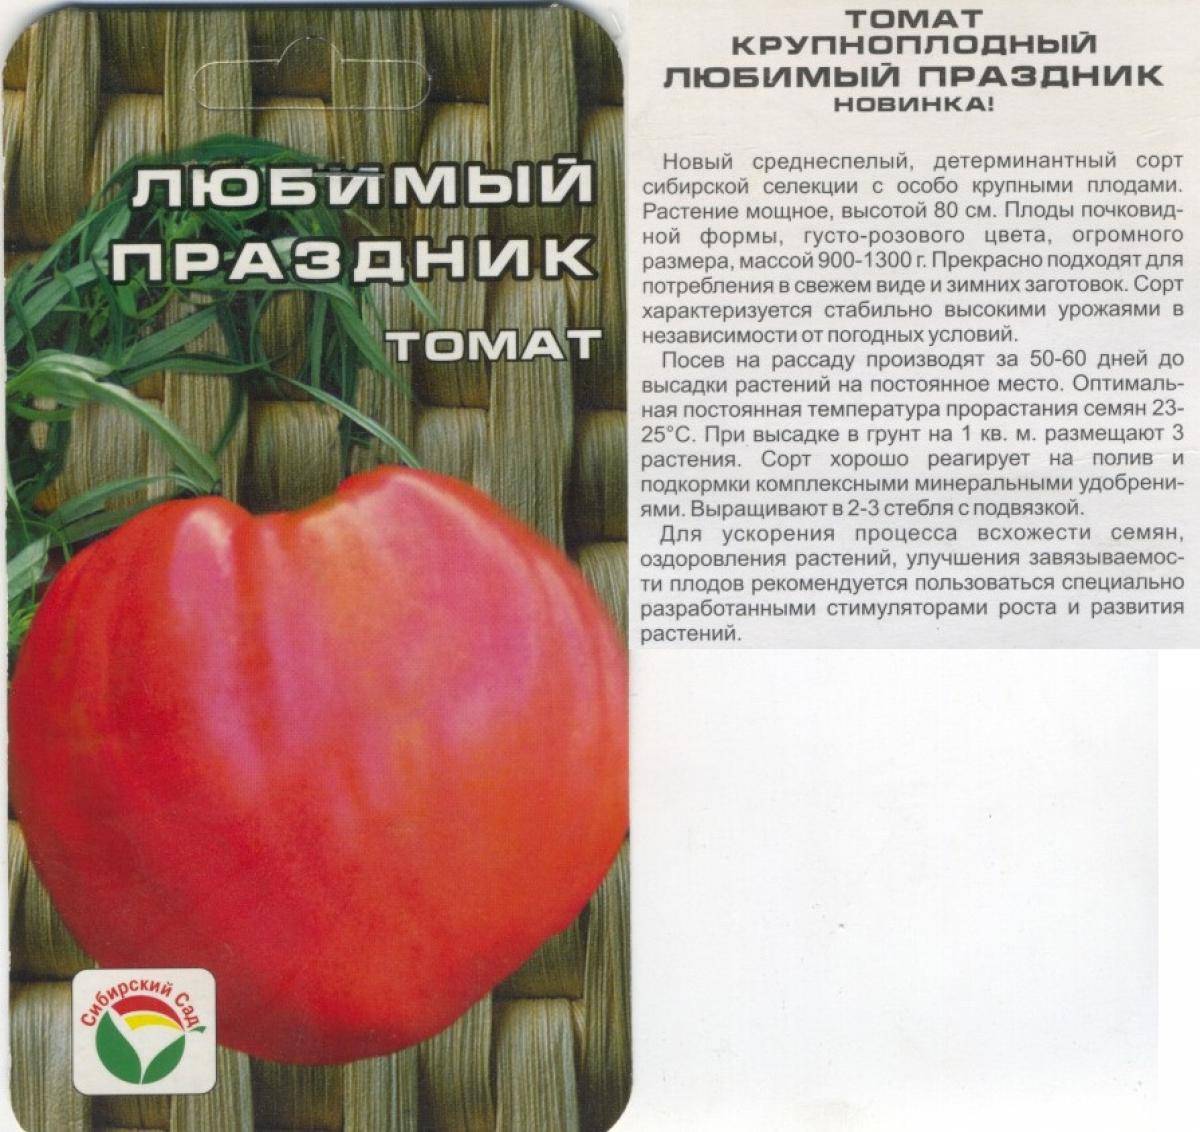 Томат даренка: характеристика и описание сорта, отзывы об урожайности помидоров, фото куста